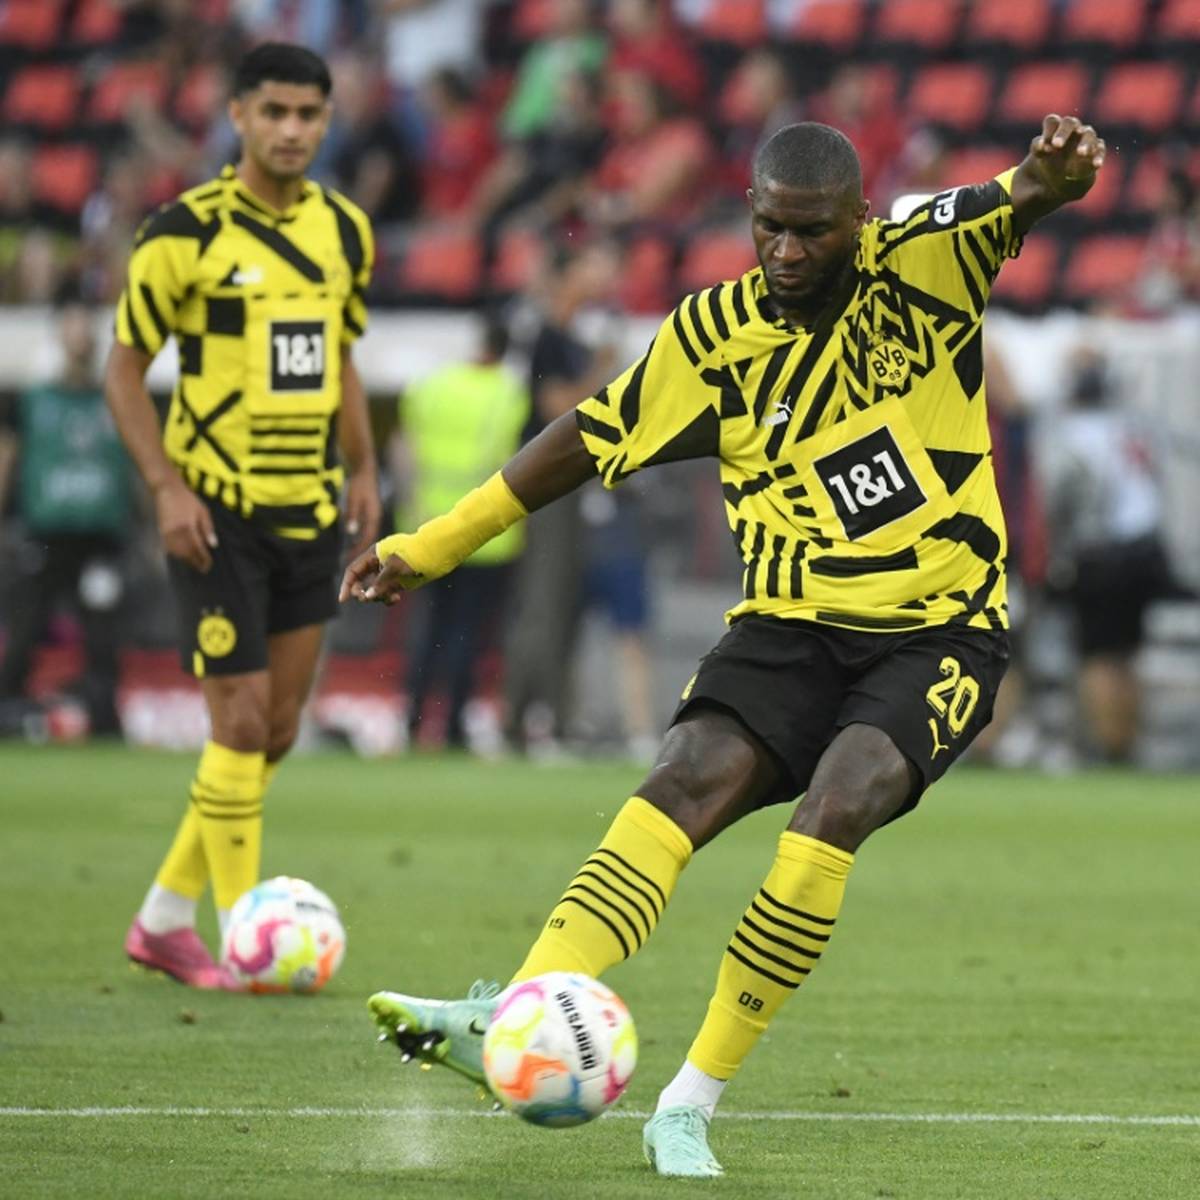 Angreifer Anthony Modeste sieht nach seinem Debüt für den Fußball-Bundesligisten Borussia Dortmund noch Steigerungspotenzial.